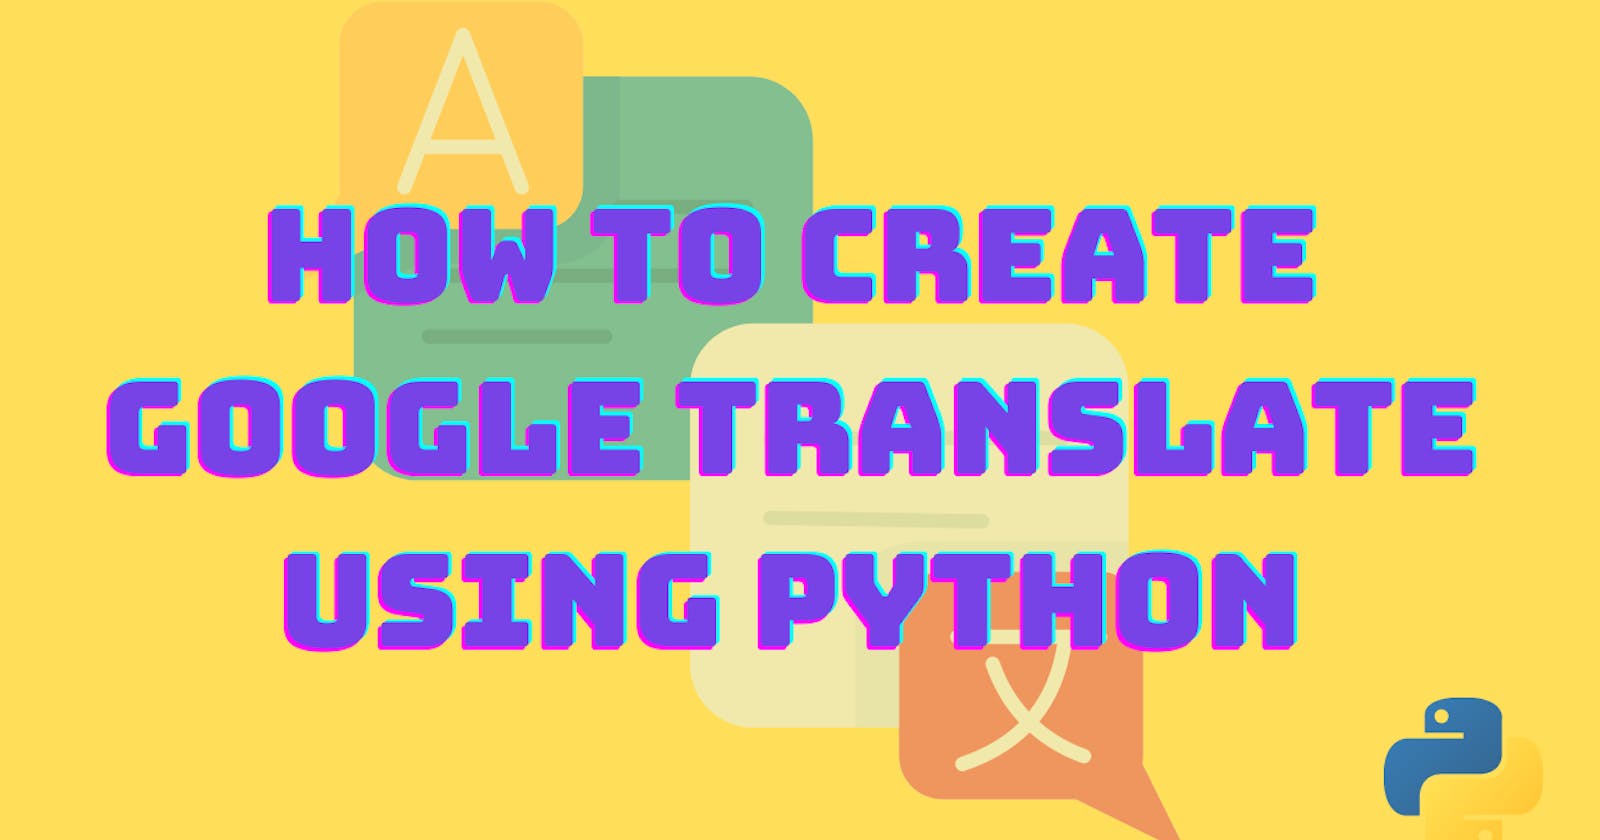 How to create a Google translate using python